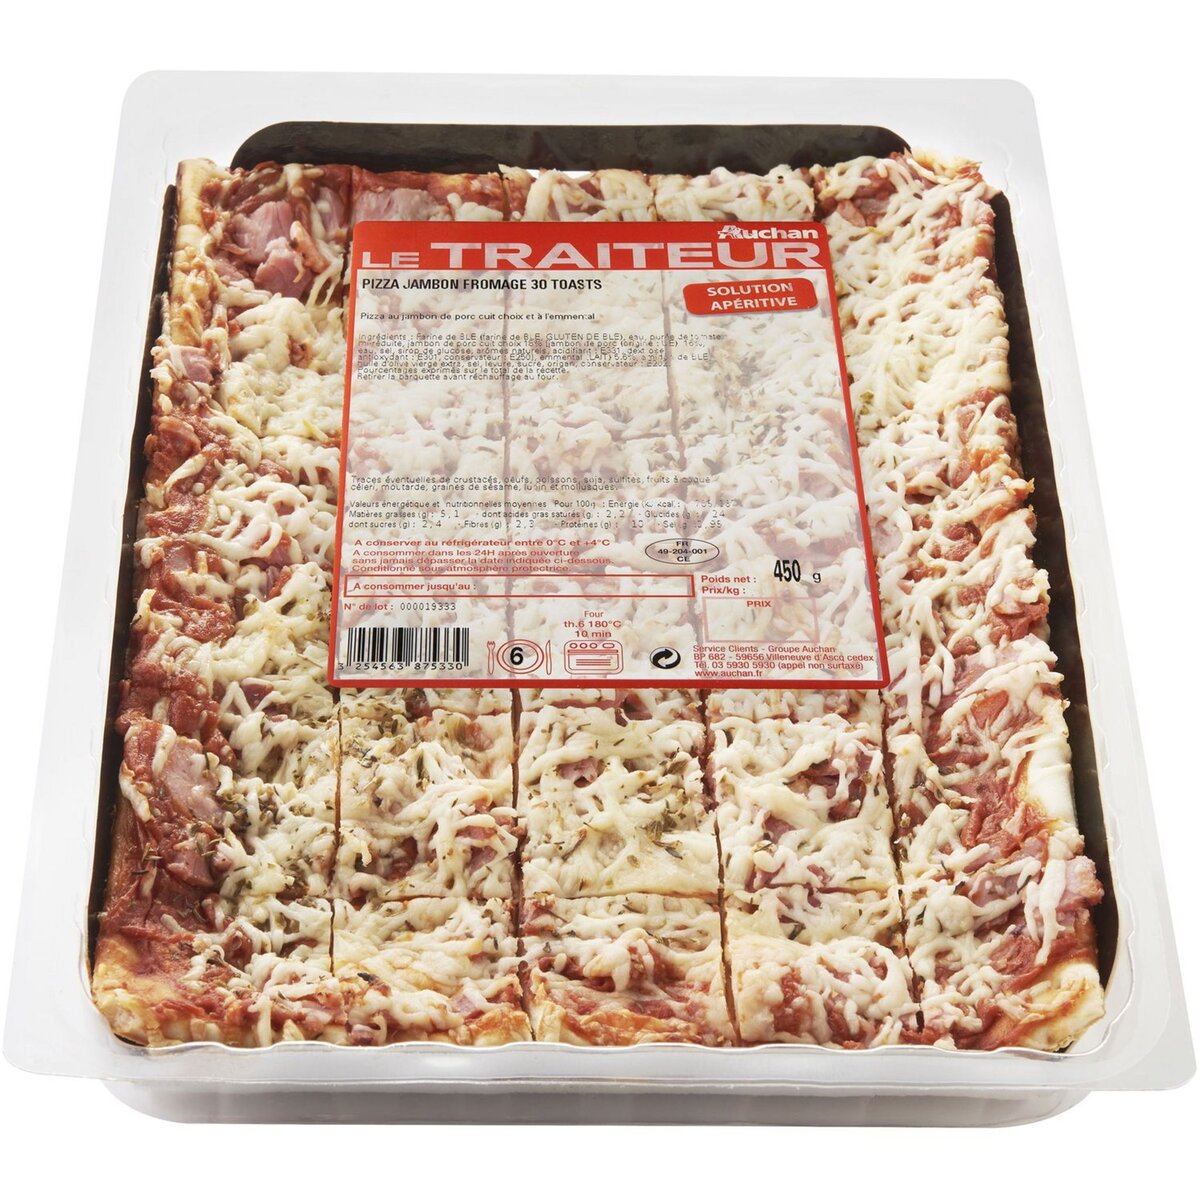 AUCHAN LE TRAITEUR Pizza jambon fromage 30 pièces 450g